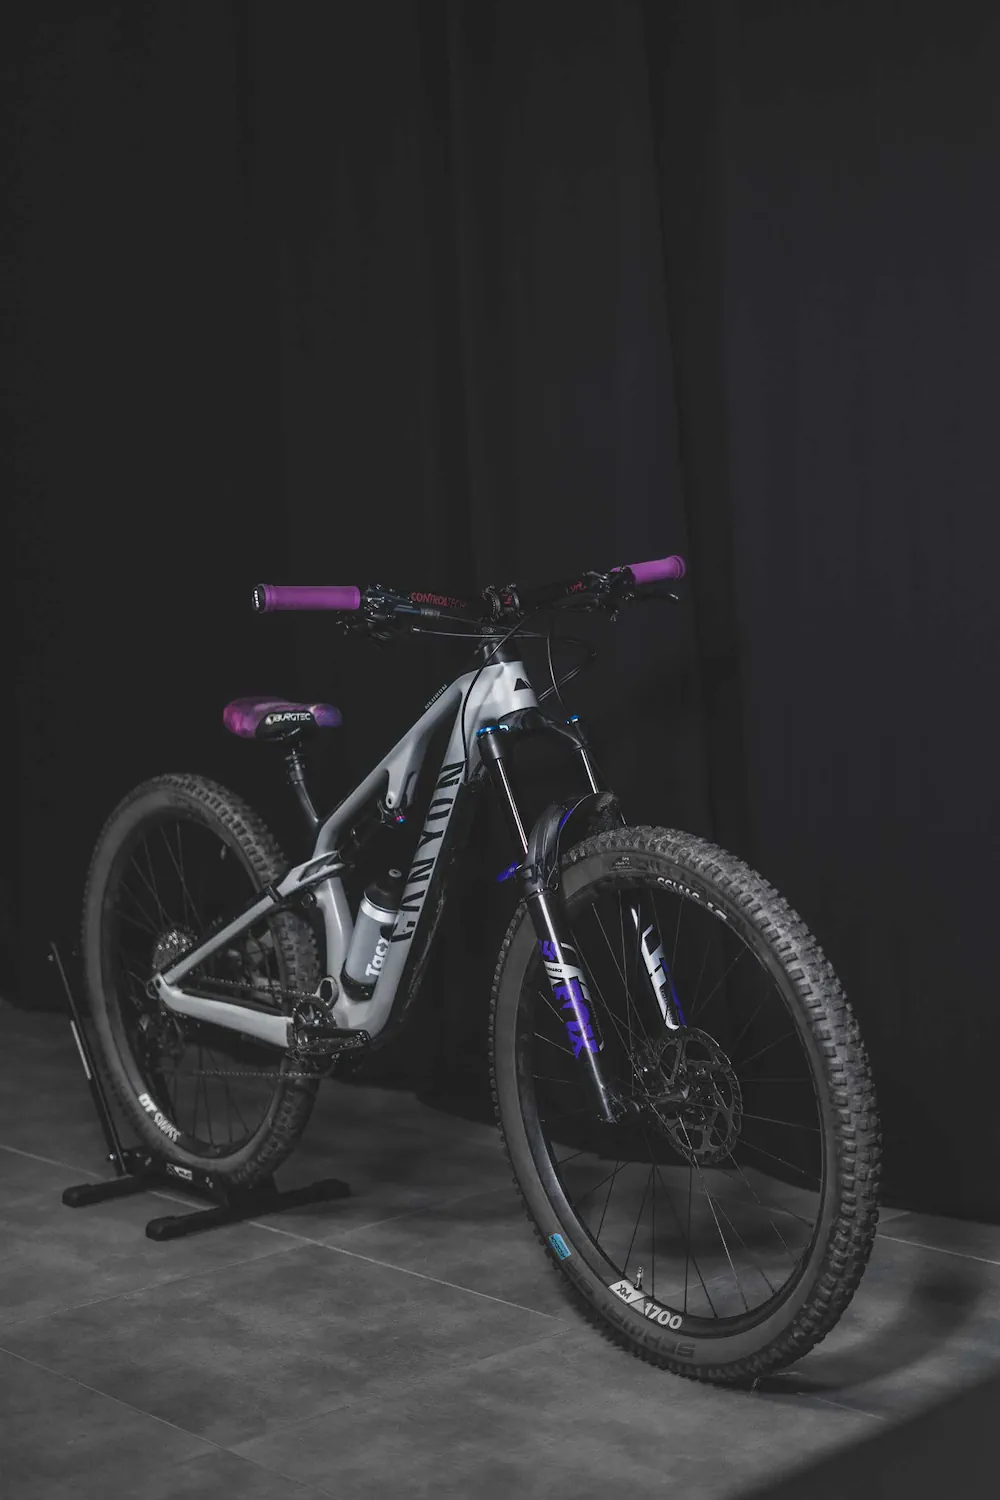 Rama roweru Canyon z eleganckim fioletowym błotnikiem 4-bike z serii Glamour, osłonięta przezroczystą folią ochronną, na której widnieje fioletowy nadruk